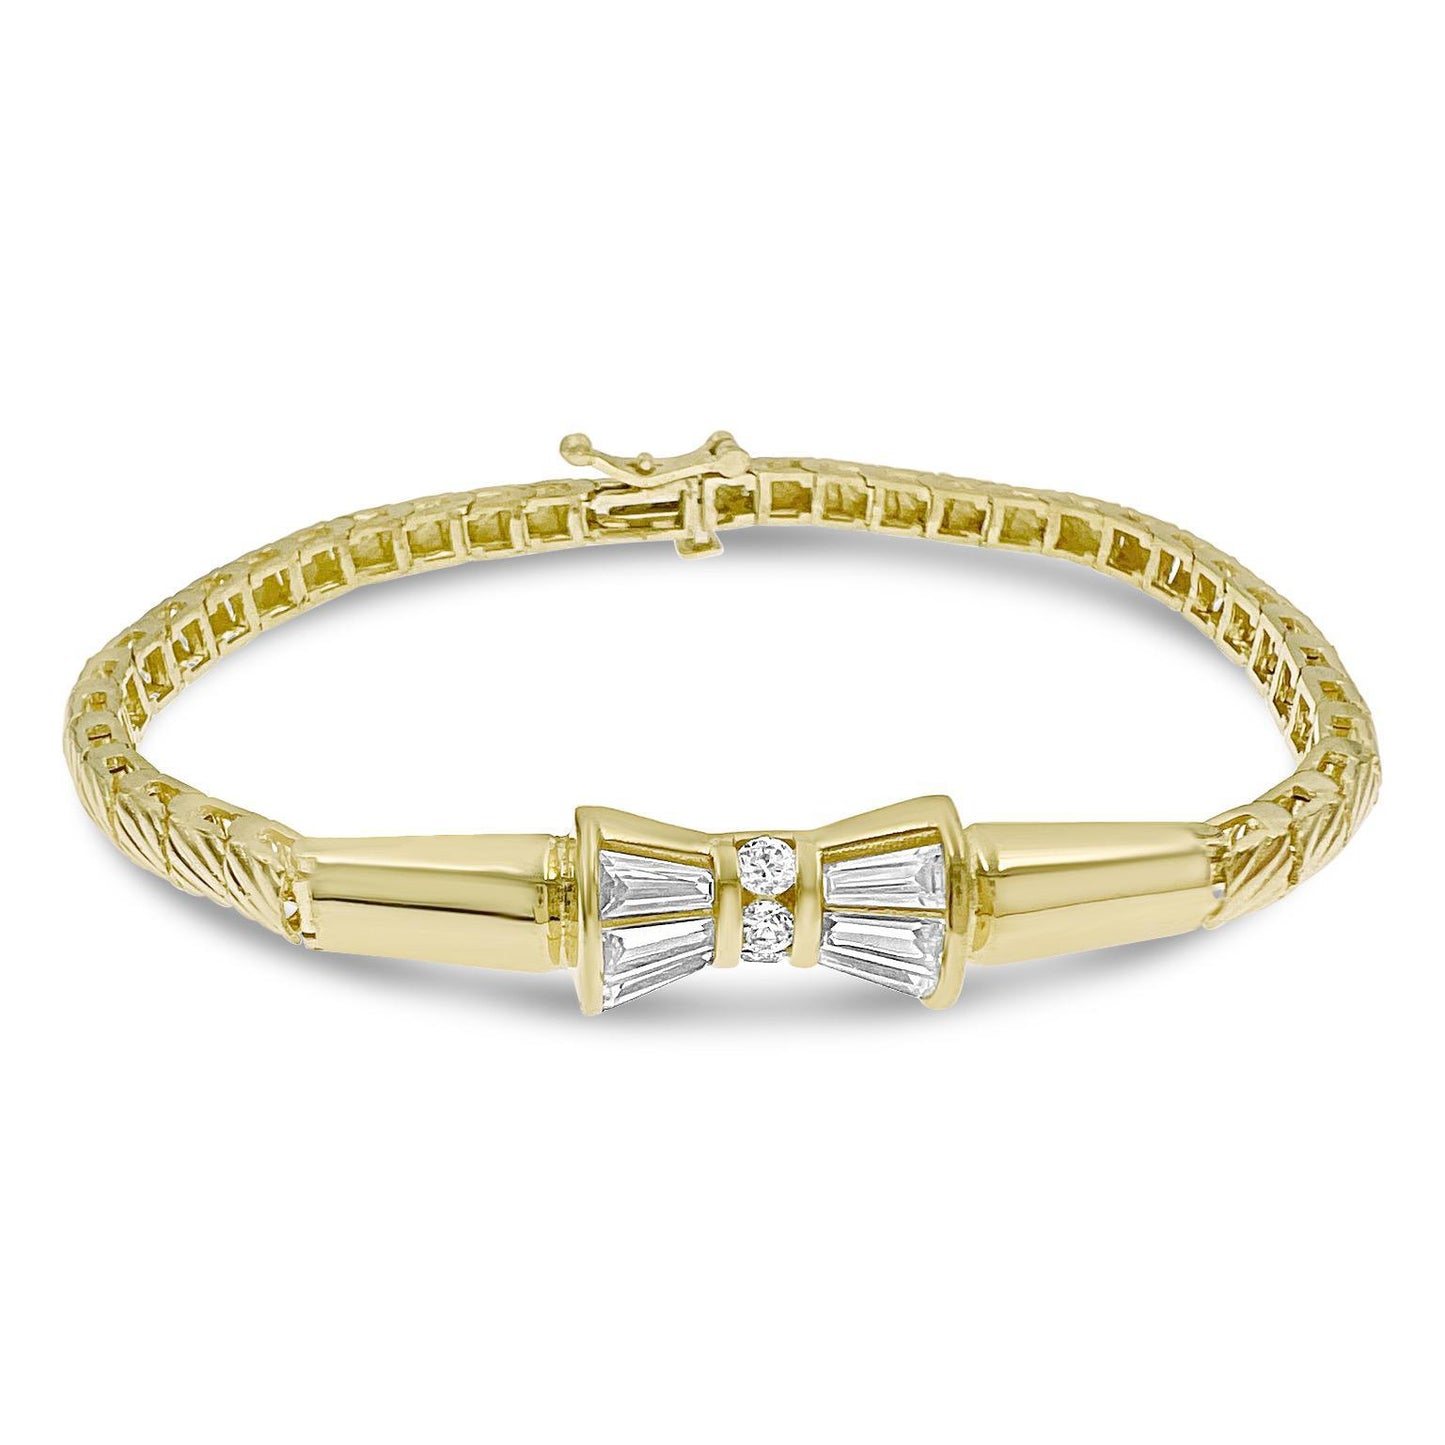 10k Yellow Gold Fancy Link Chain Bracelet 7 inch